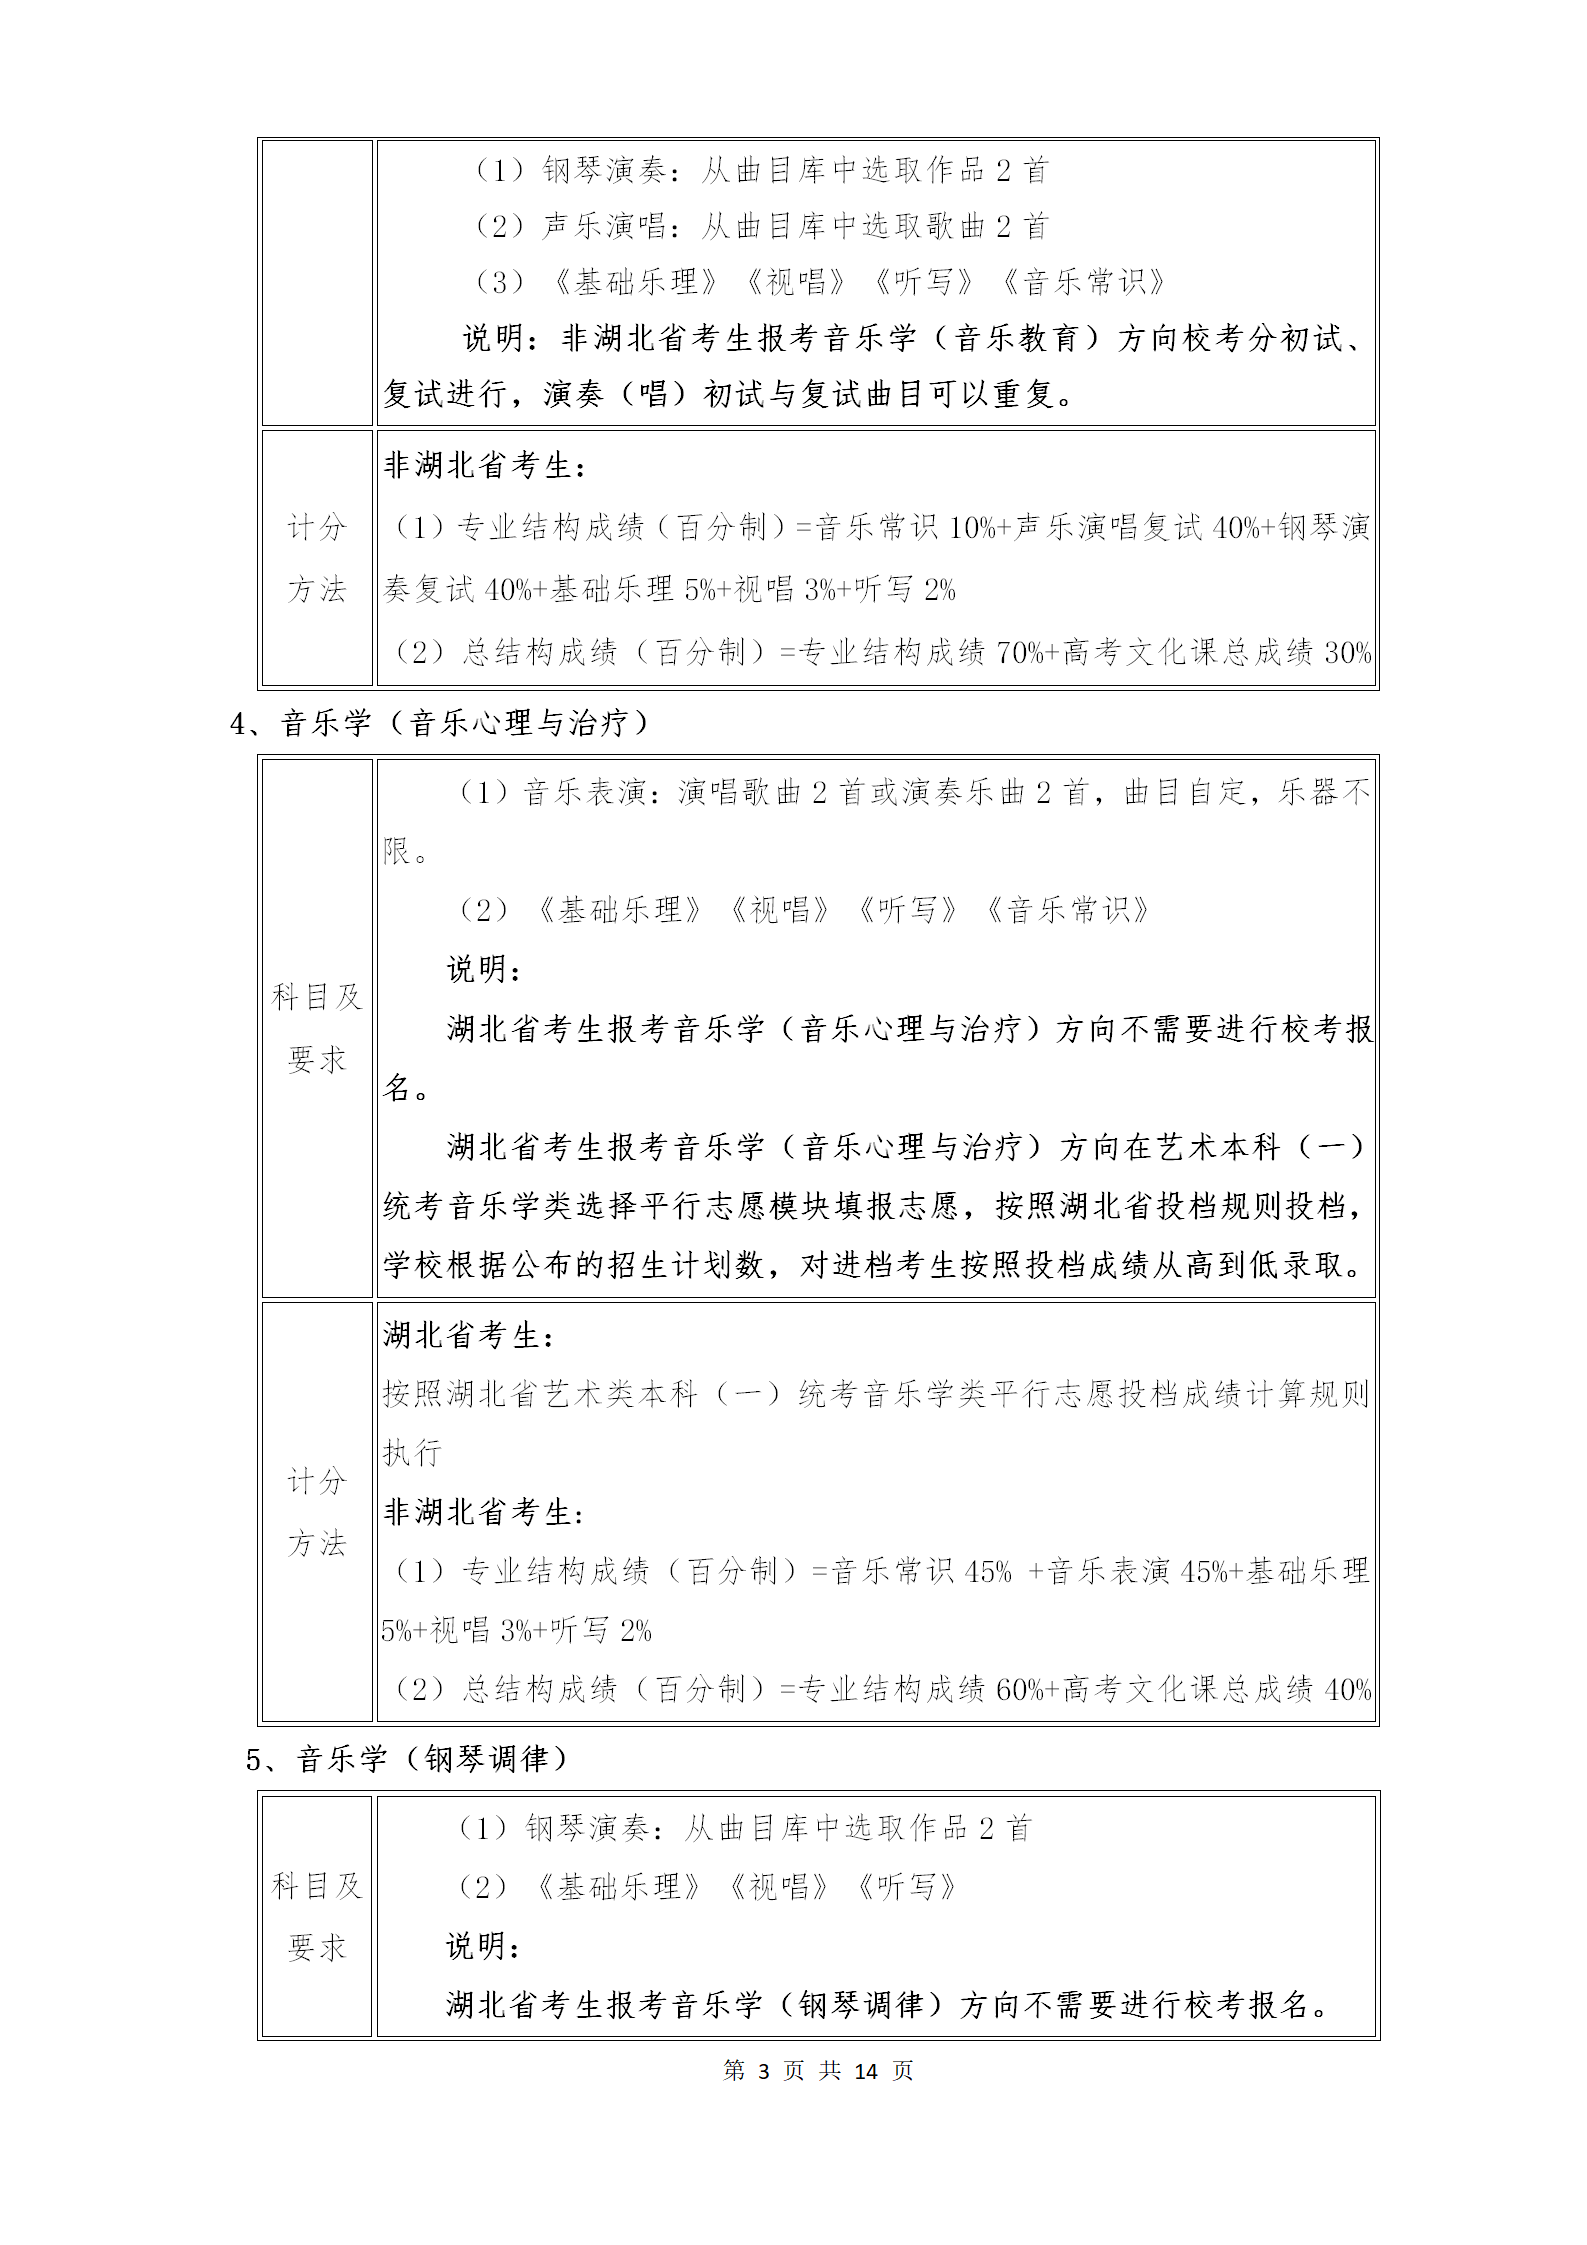 附件1：武汉音乐学院2021年普通本科招生专业考试内容和计分方法（调整版）_03.png